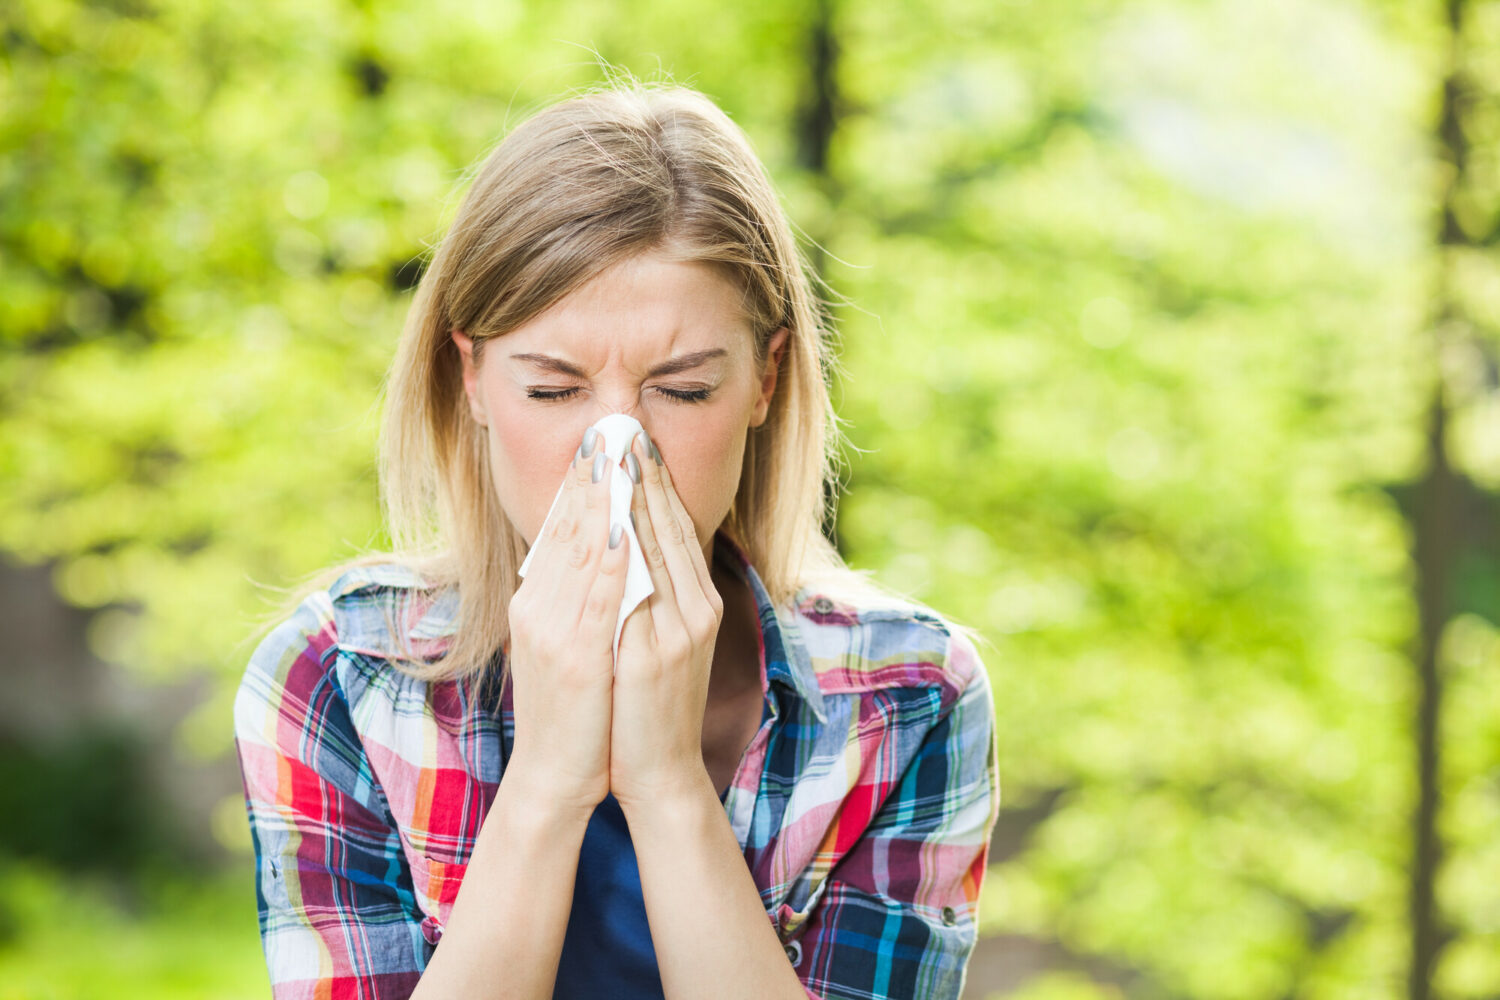 Der Frühling hat auch wieder Pollen im Handgepäck, die vielen Menschen die Tränen in die Augen treiben. Ob eine Allergie vorliegt, lässt sich mit Tests abklären. Im EBM ist die Abrechnung überschaubar, die GOÄ bietet hier mehr.